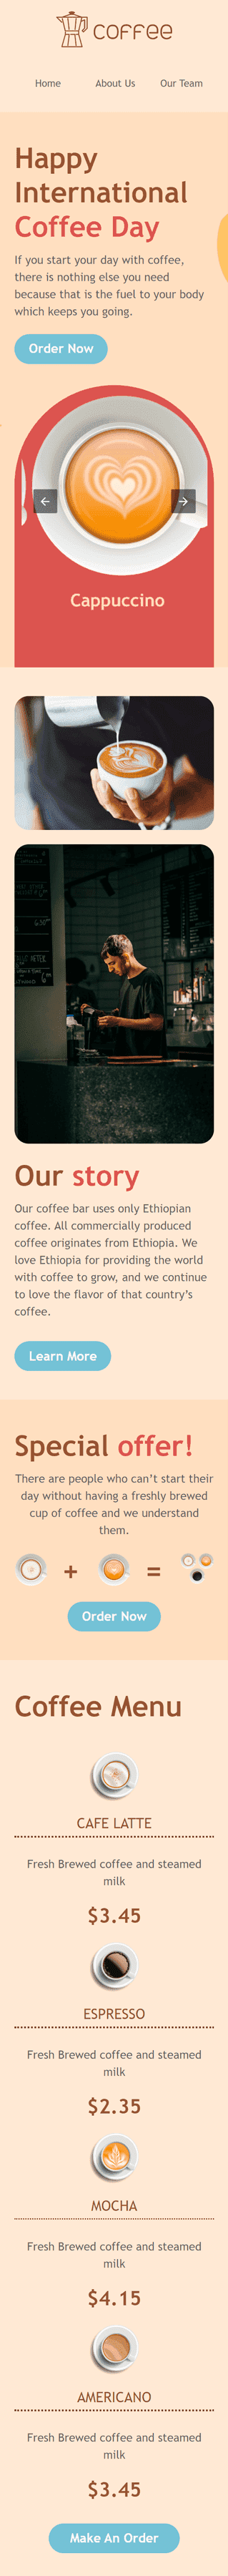 Modello Email Giornata internazionale del caffè «Ore felici!» per il settore industriale di Bevande Visualizzazione mobile